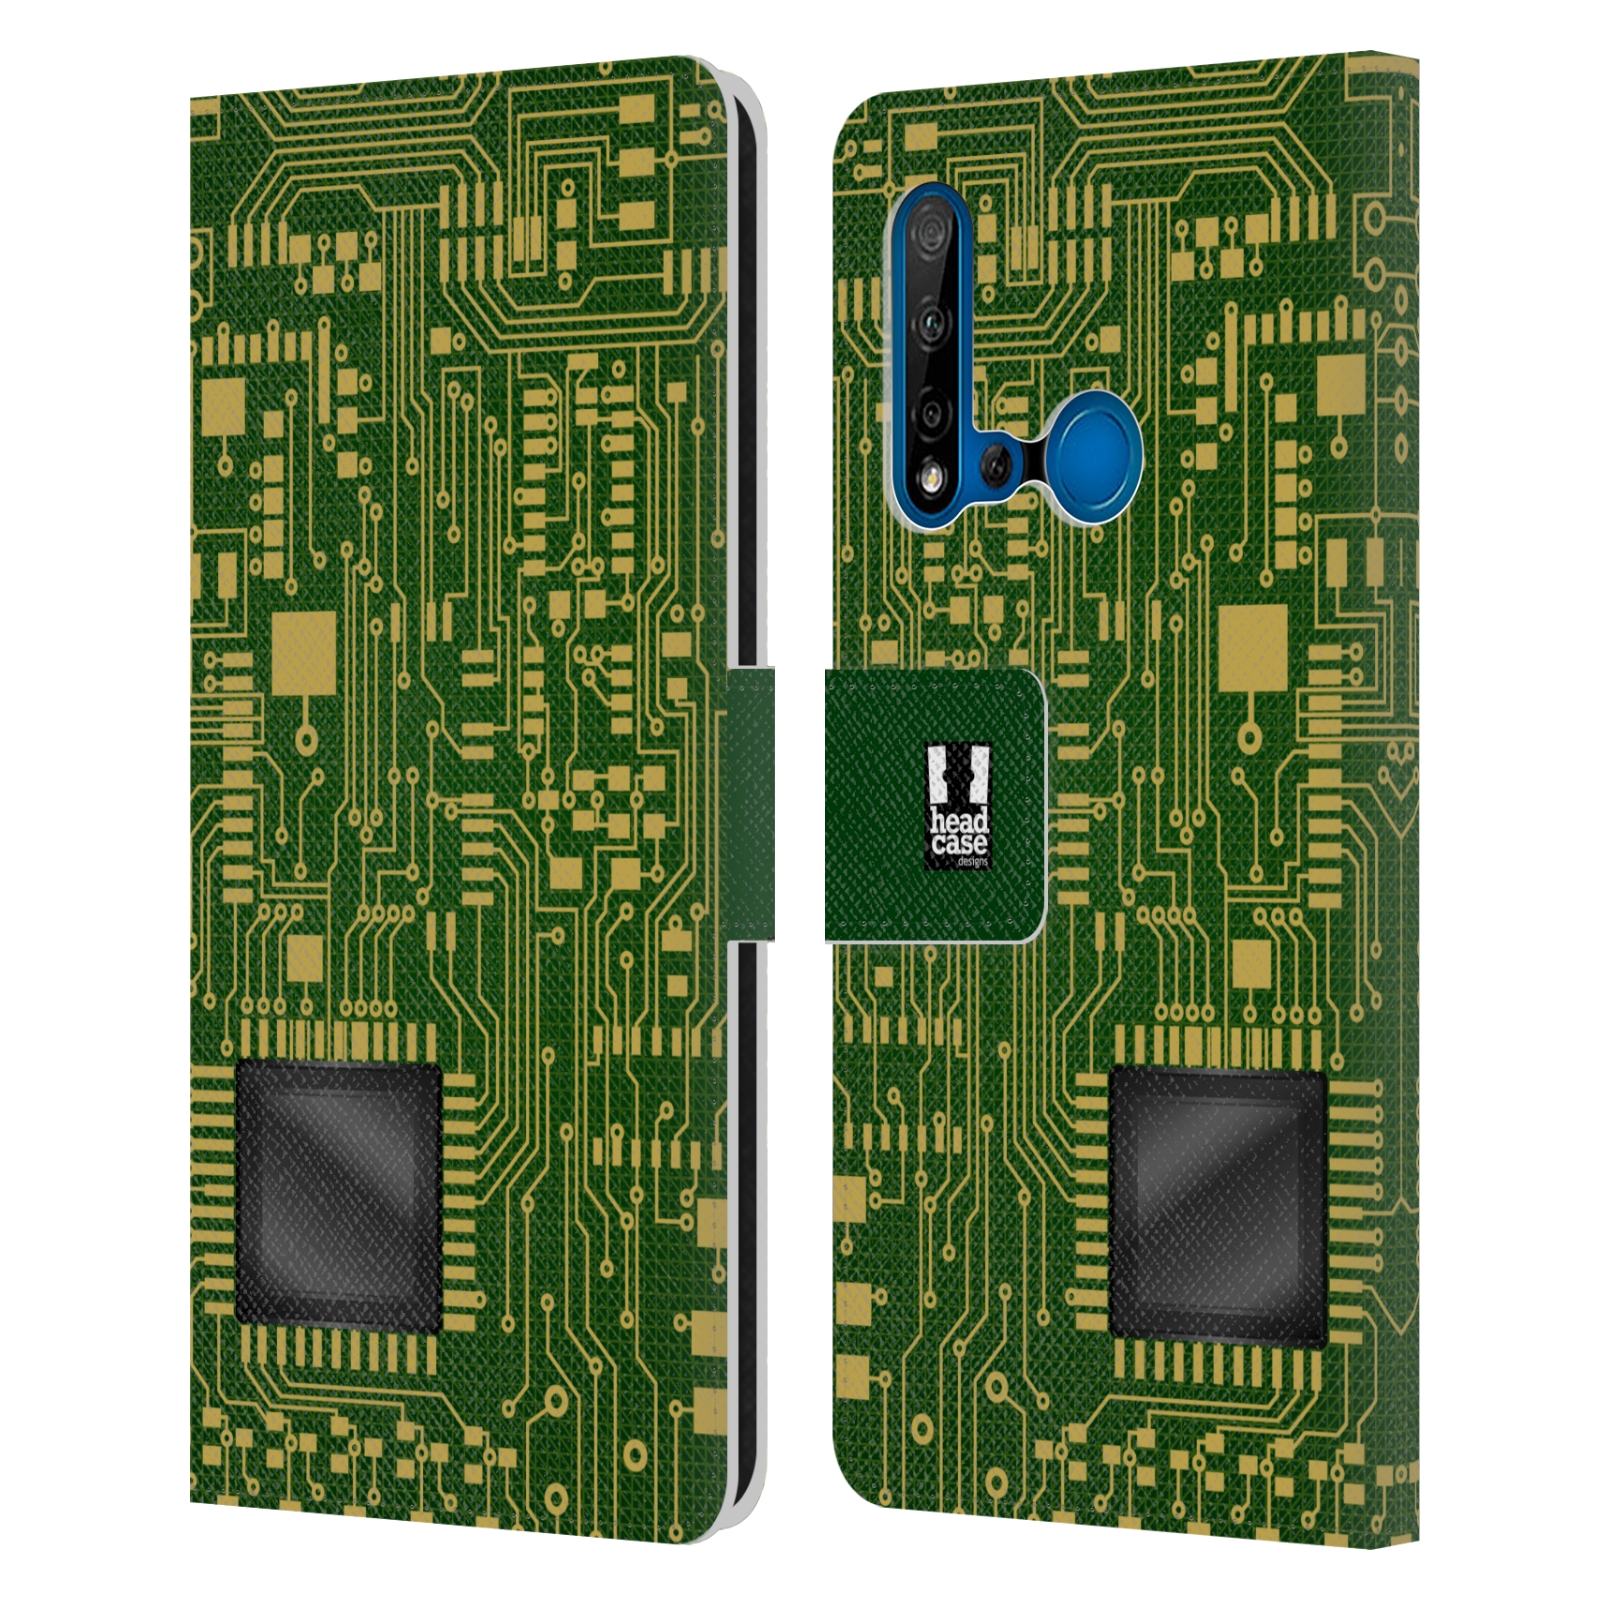 Pouzdro na mobil Huawei P20 LITE 2019 počítač základní deska zelená barva velký čip